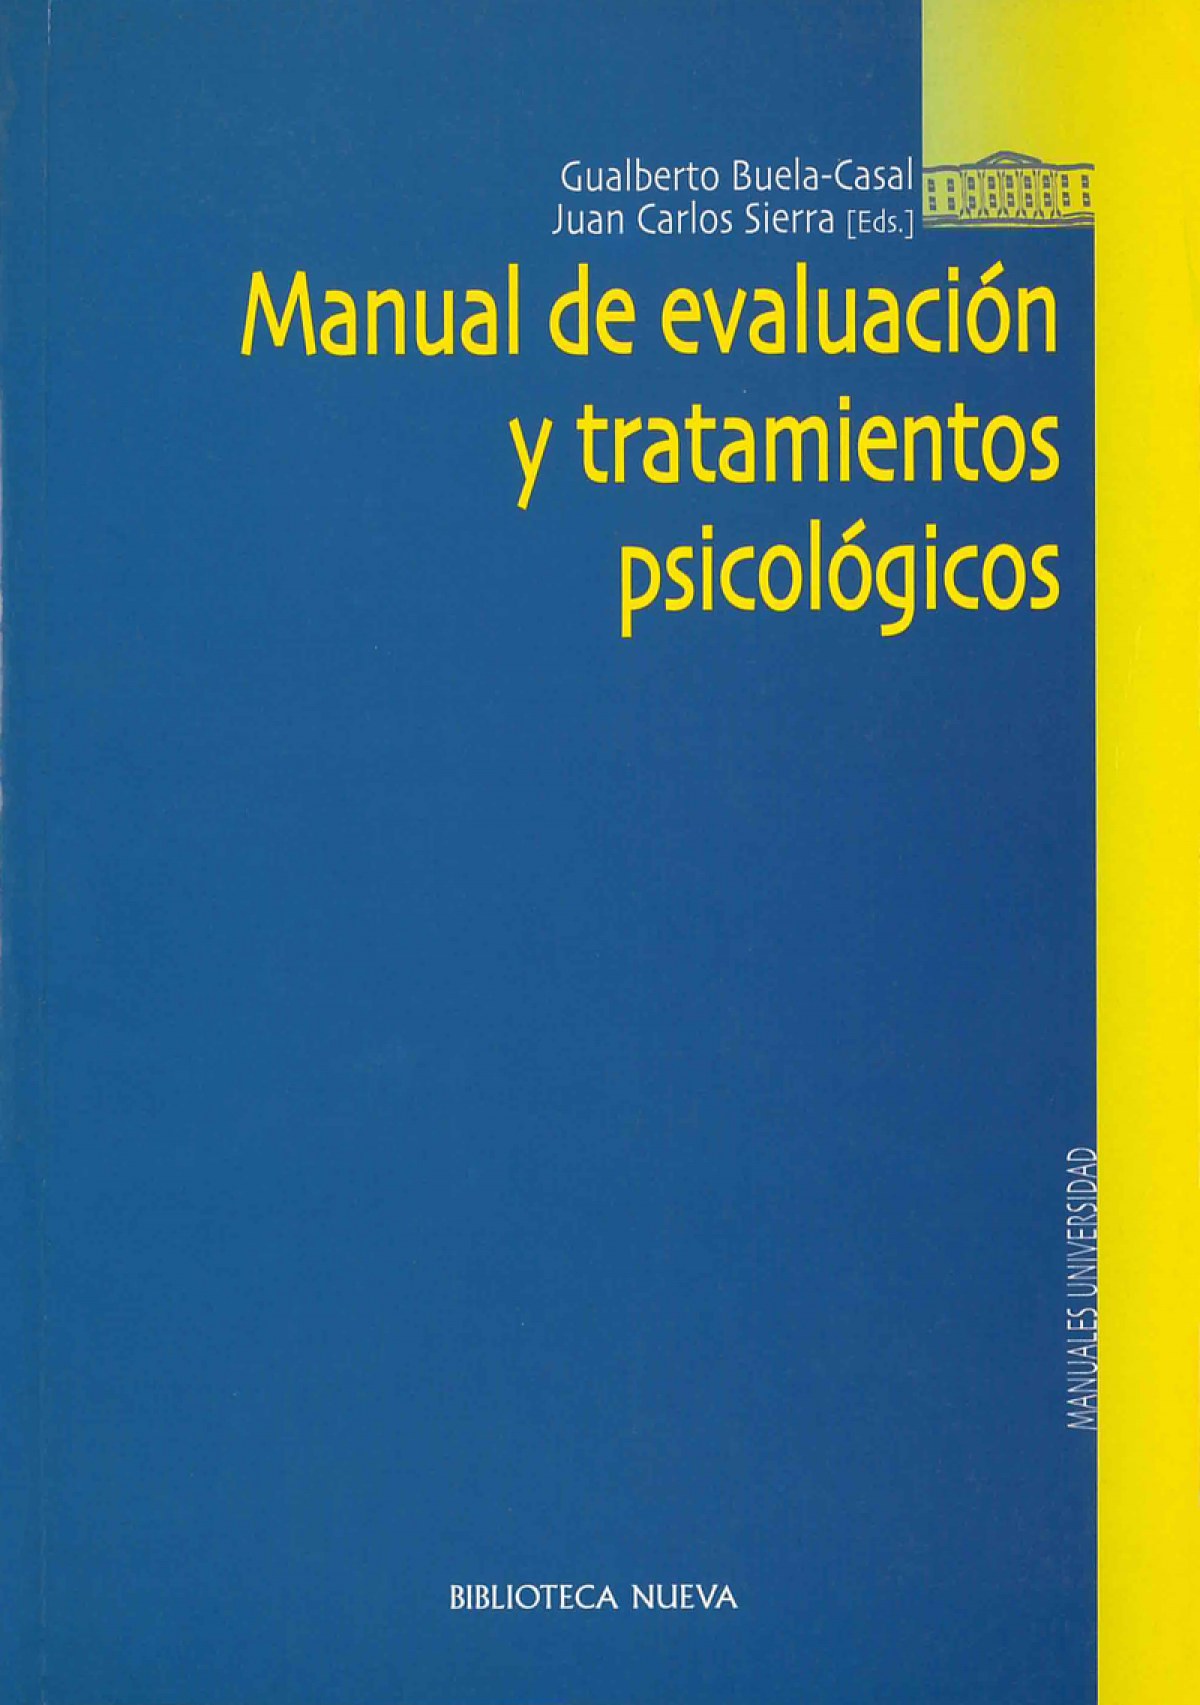 Manual de evaluación y tratamientos psicológicos